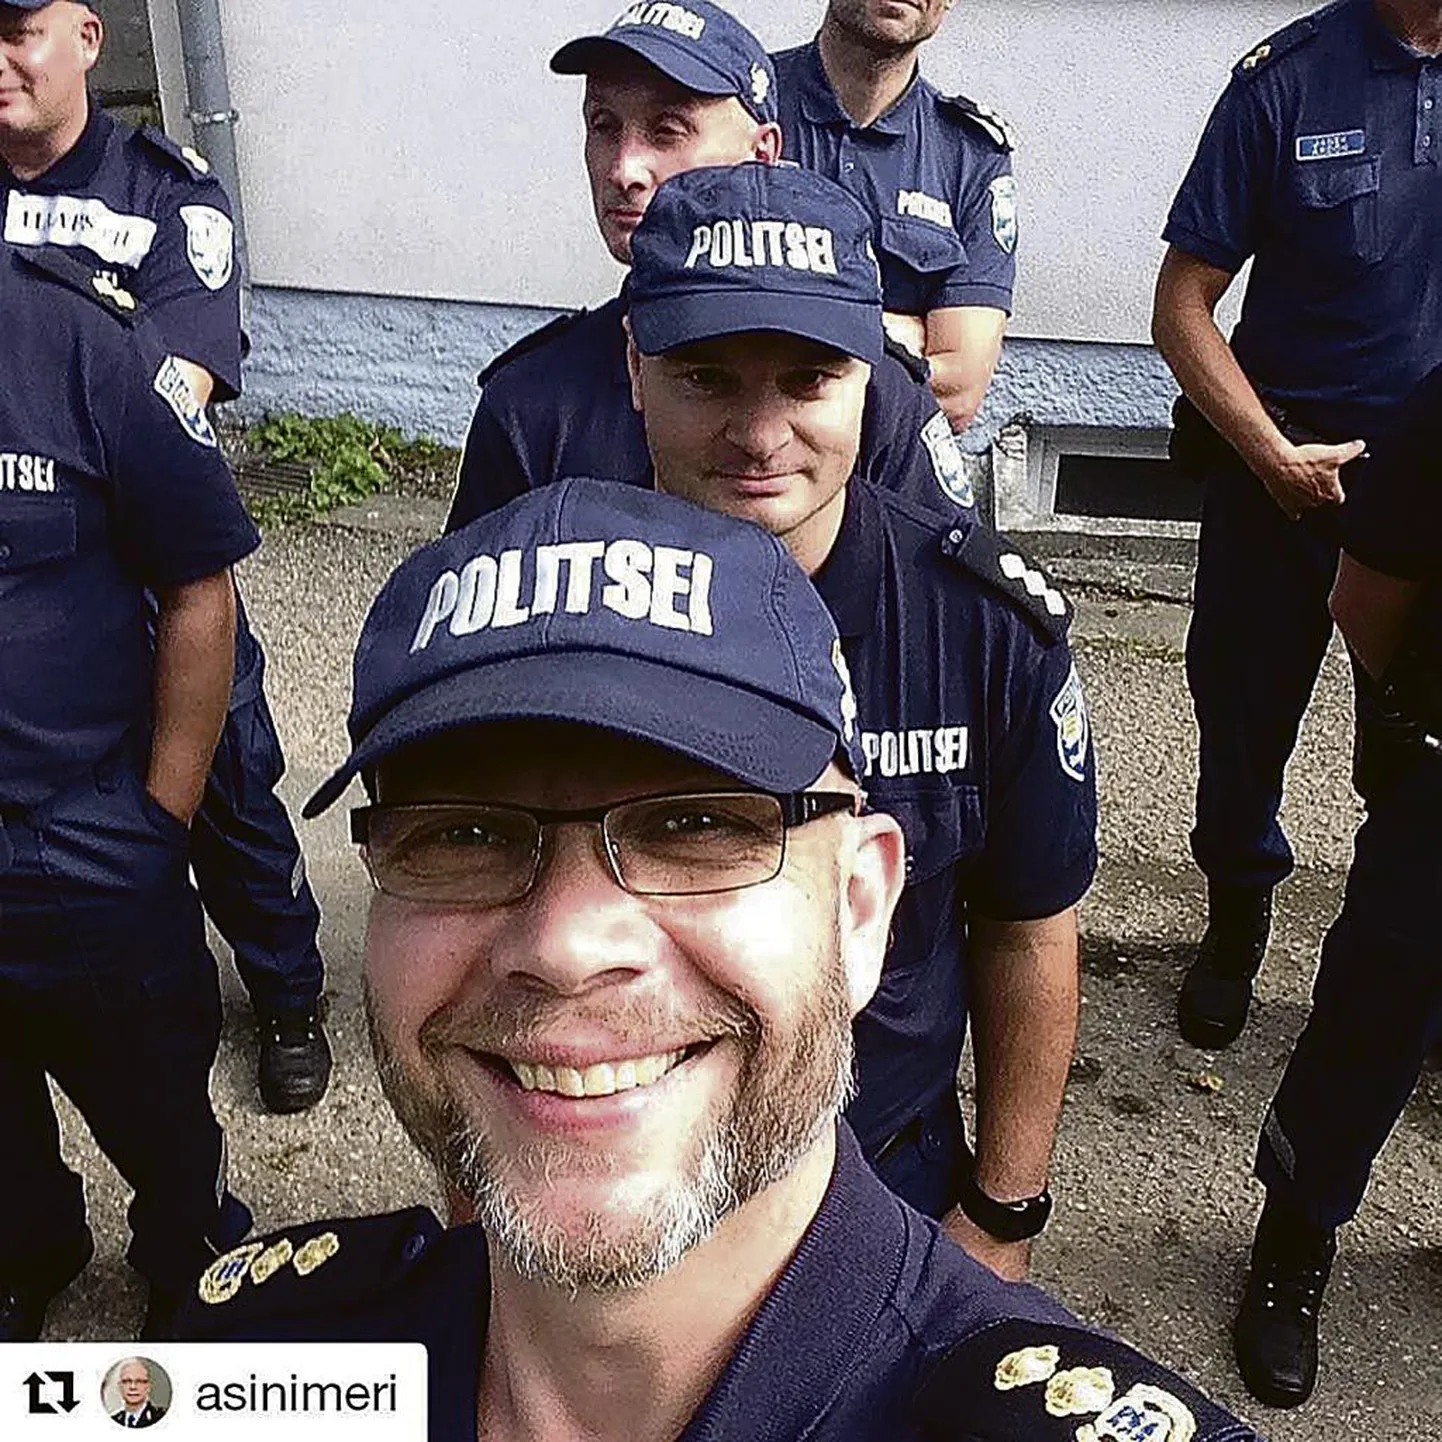 Pärnu politseinikud on mitu aastat Facebookis reageerinud oma nime ja näoga murettekitavatele teadetele või lihtsalt lõbusaid pilte postitanud.